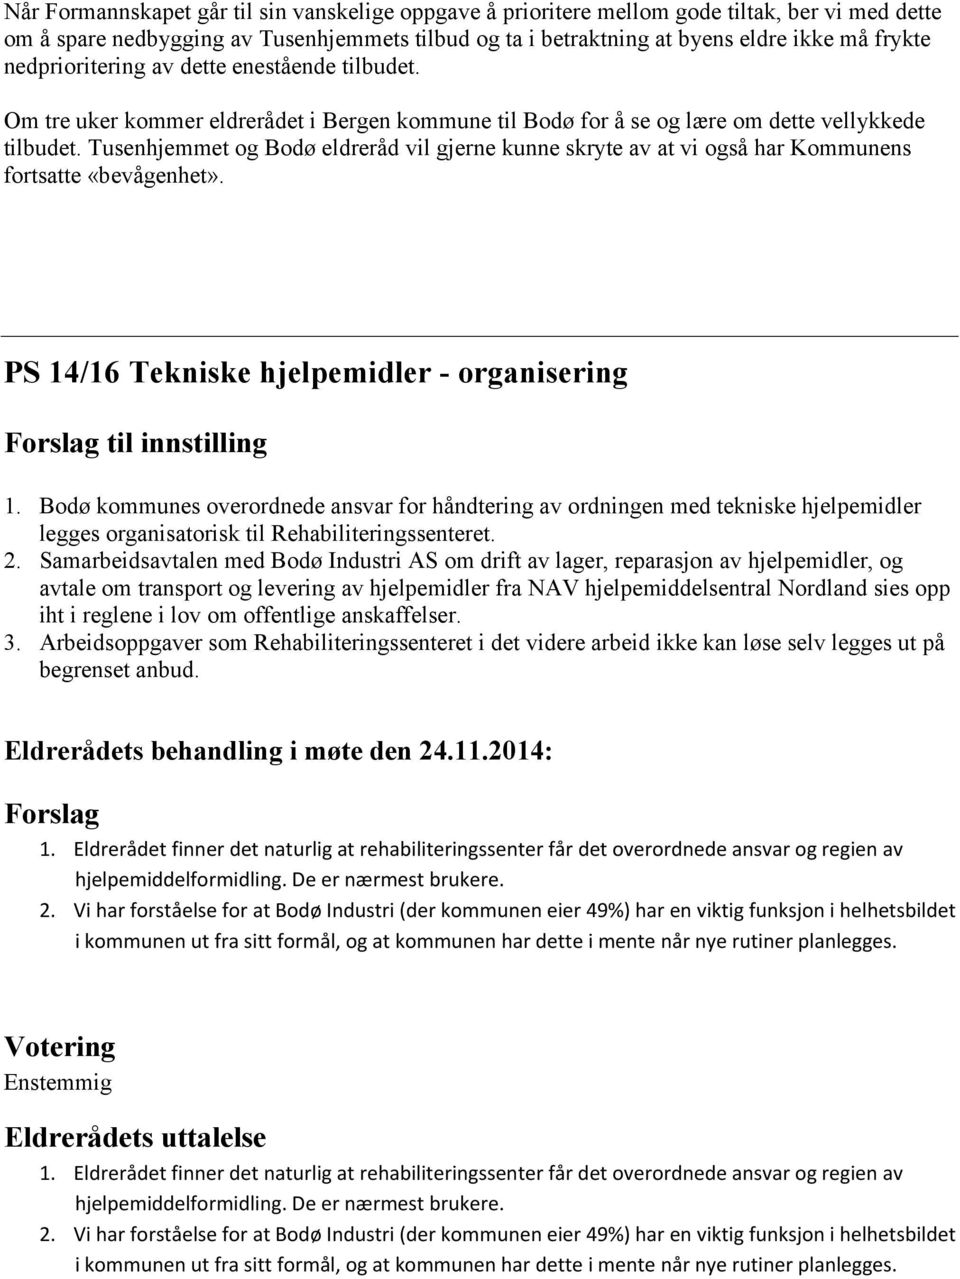 Tusenhjemmet og Bodø eldreråd vil gjerne kunne skryte av at vi også har Kommunens fortsatte «bevågenhet». PS 14/16 Tekniske hjelpemidler - organisering til innstilling 1.